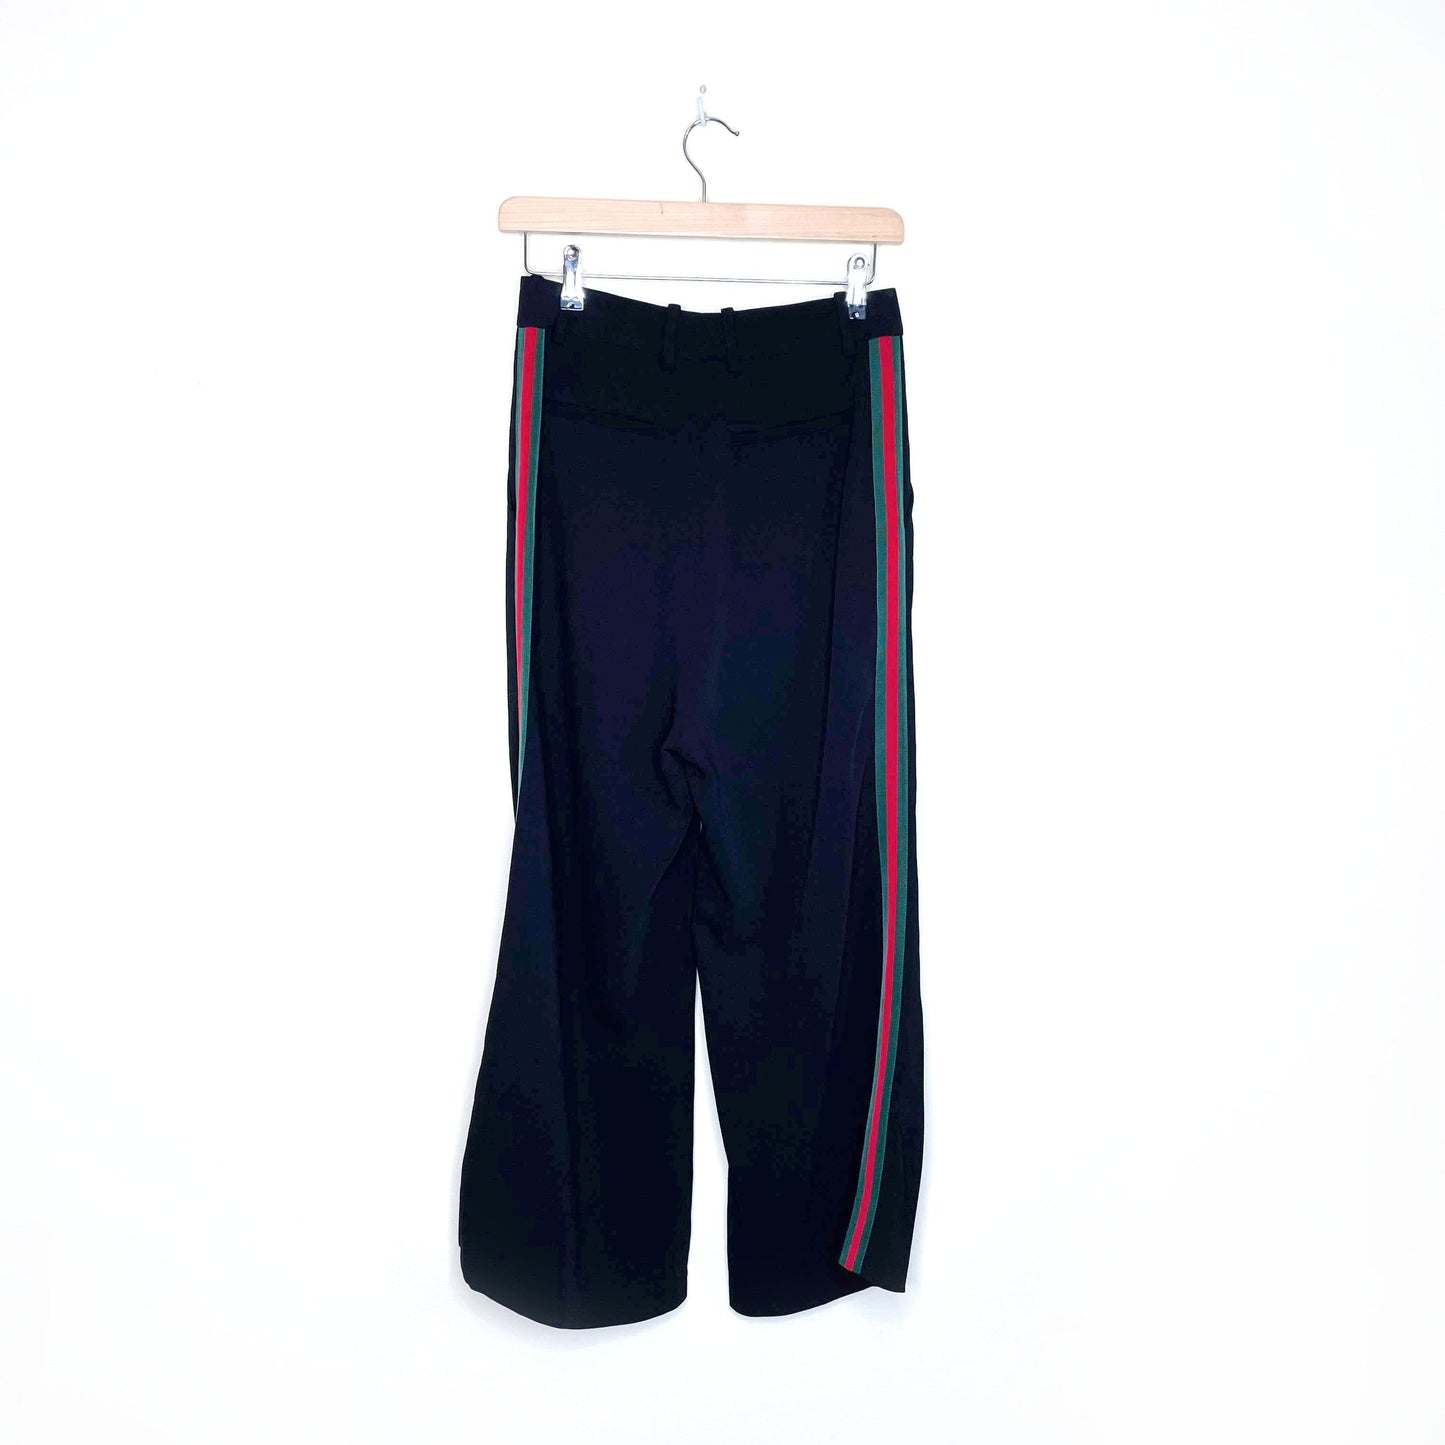 gucci black high rise web-striped bootcut pants - size 38